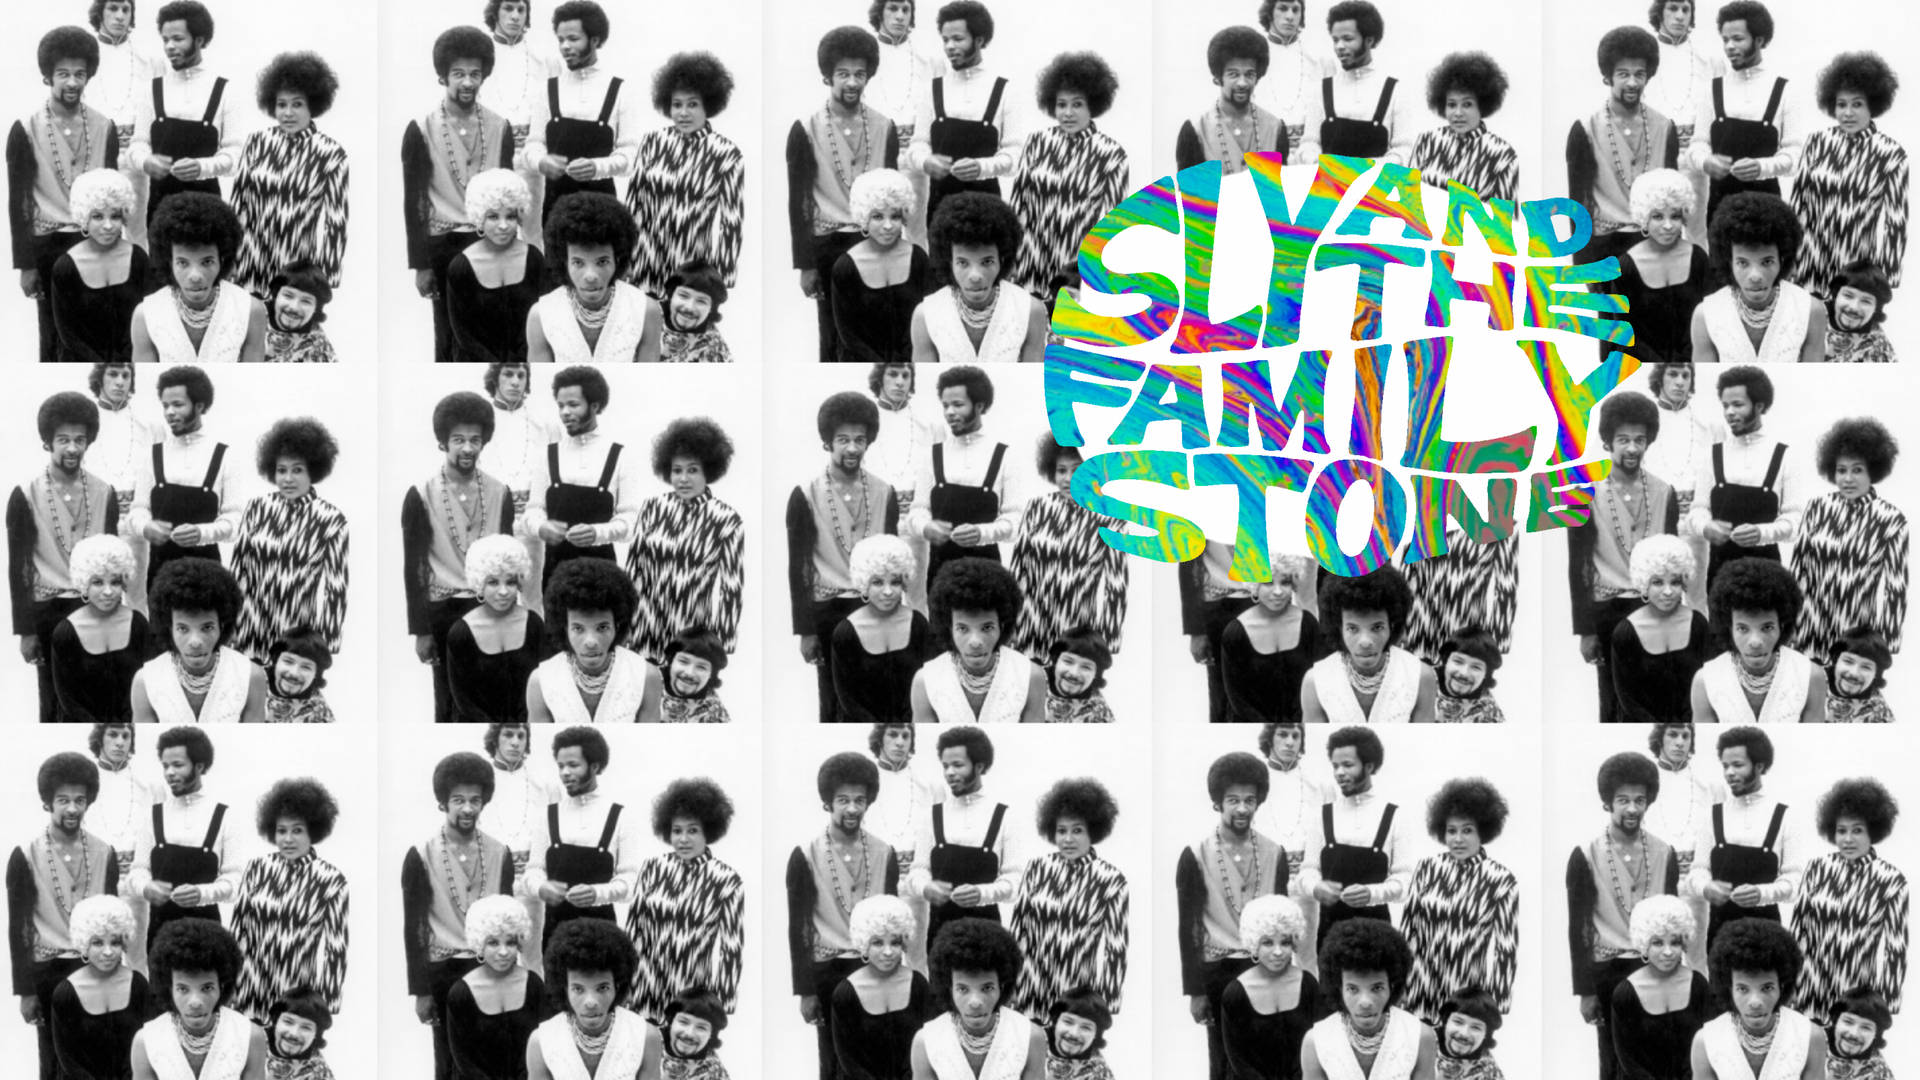 Sly Og Familien Stone 2560 X 1440 Wallpaper